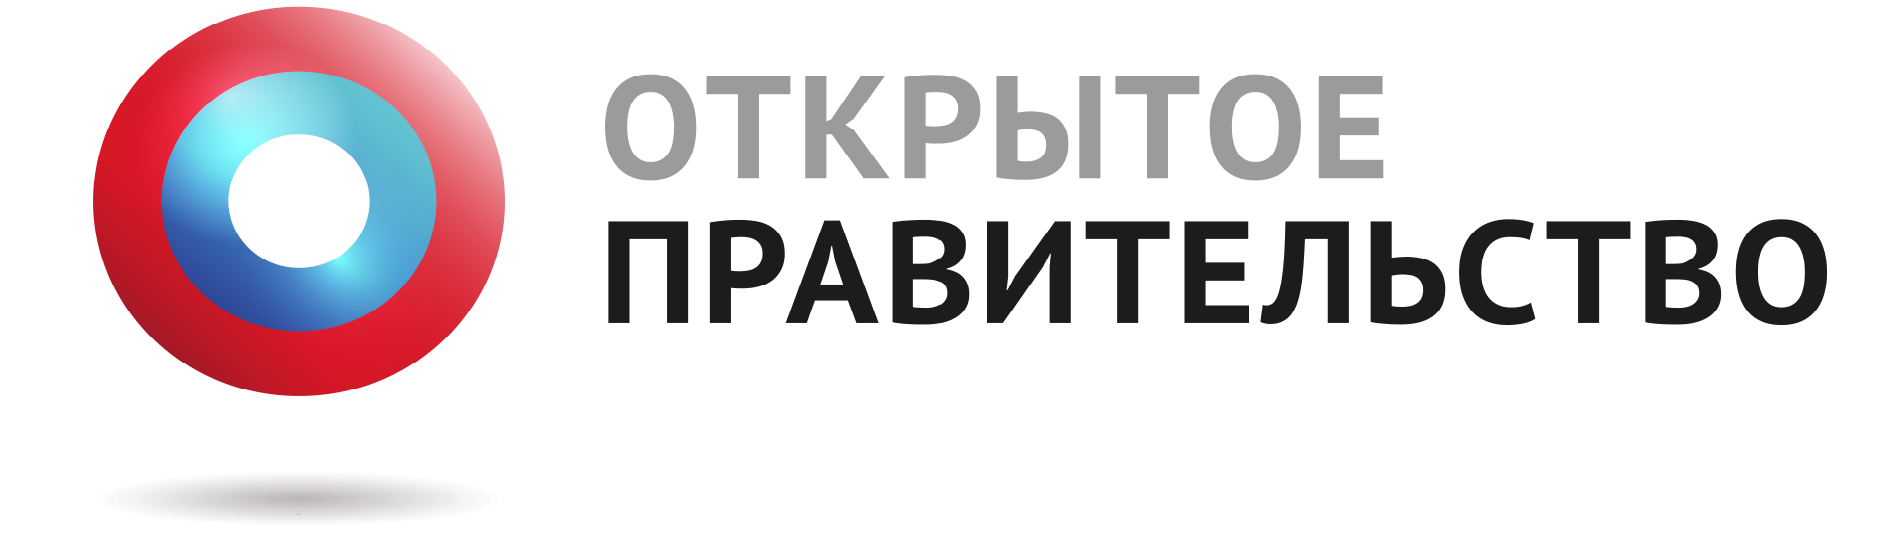 logo-open-gov1-png.png